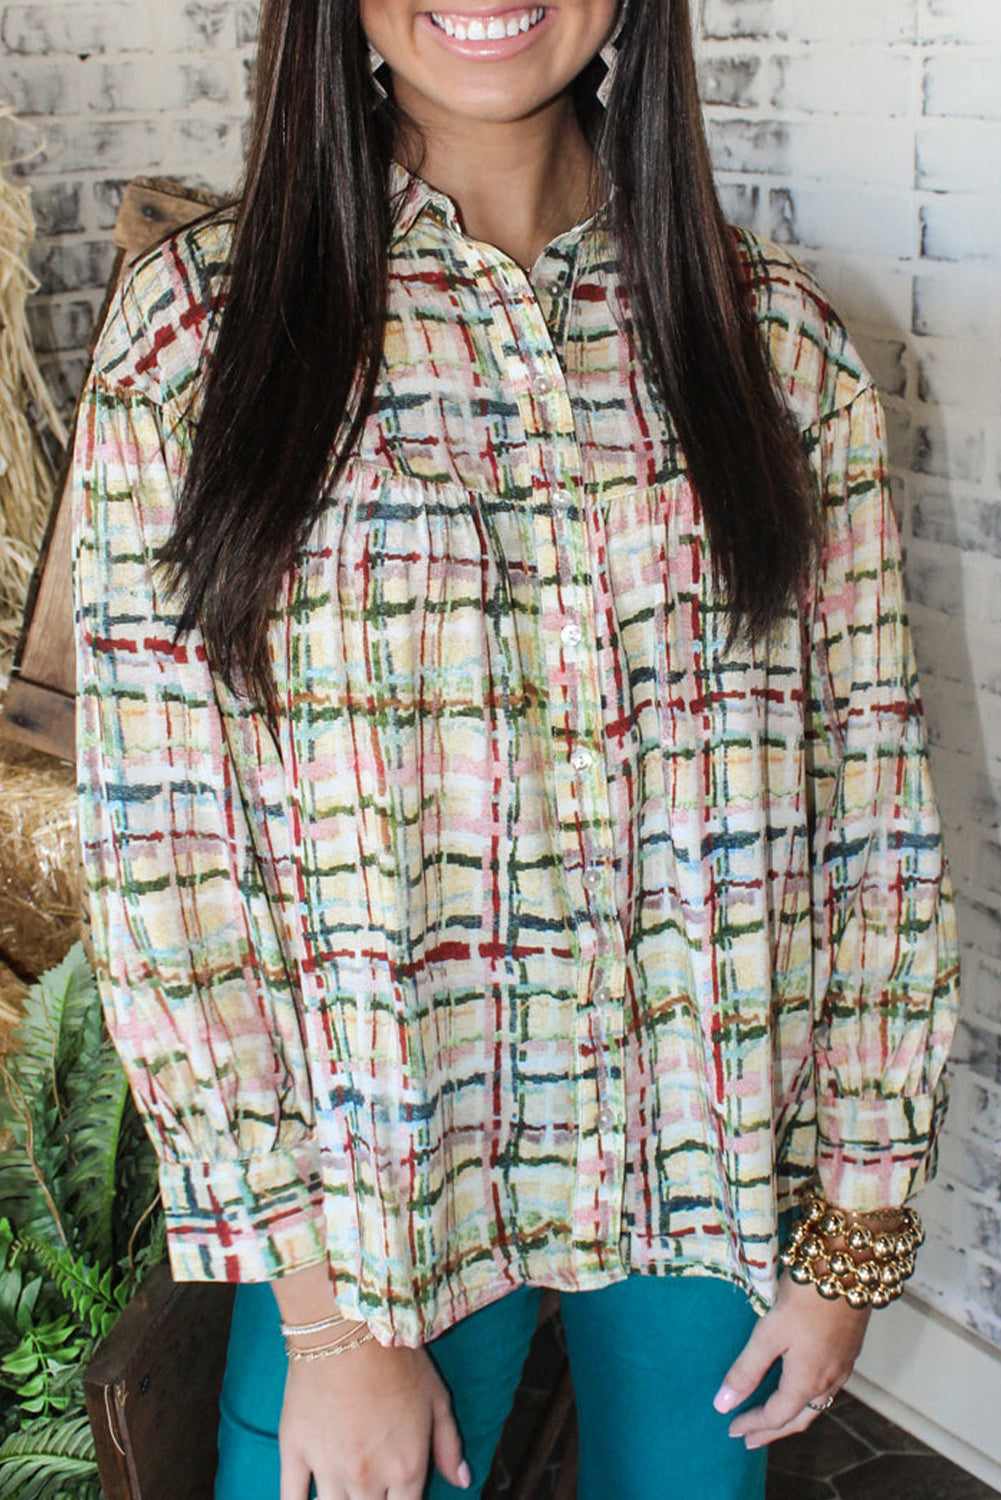 Večbarvna srajca s karirastim vzorcem in napihnjenimi rokavi